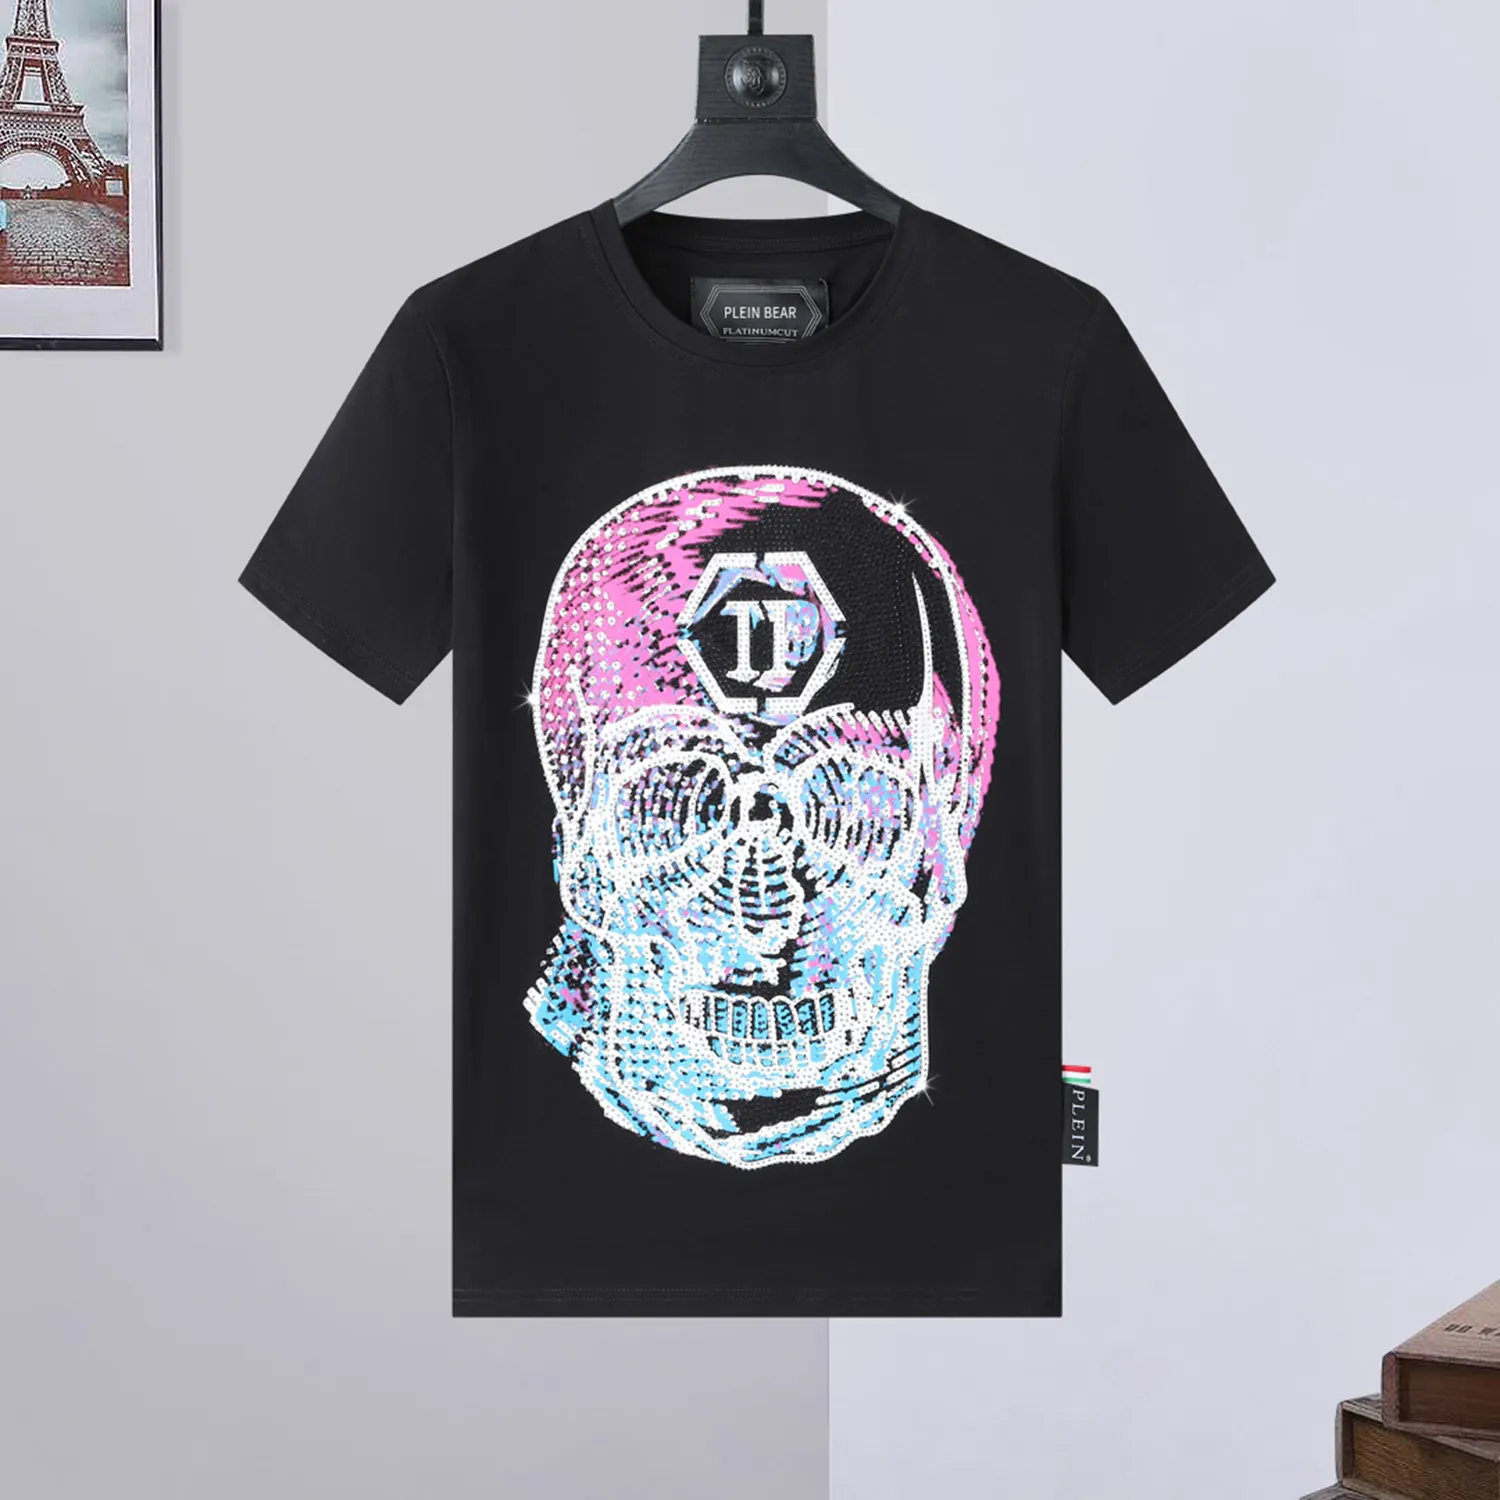 PLEIN BEAR T-Shirt Herren Designer-T-Shirts Markenkleidung Strass PP Schädel Männer T-Shirt Rundhalsausschnitt SS Schädel Hip Hop T-Shirt Top T-Shirts 16705